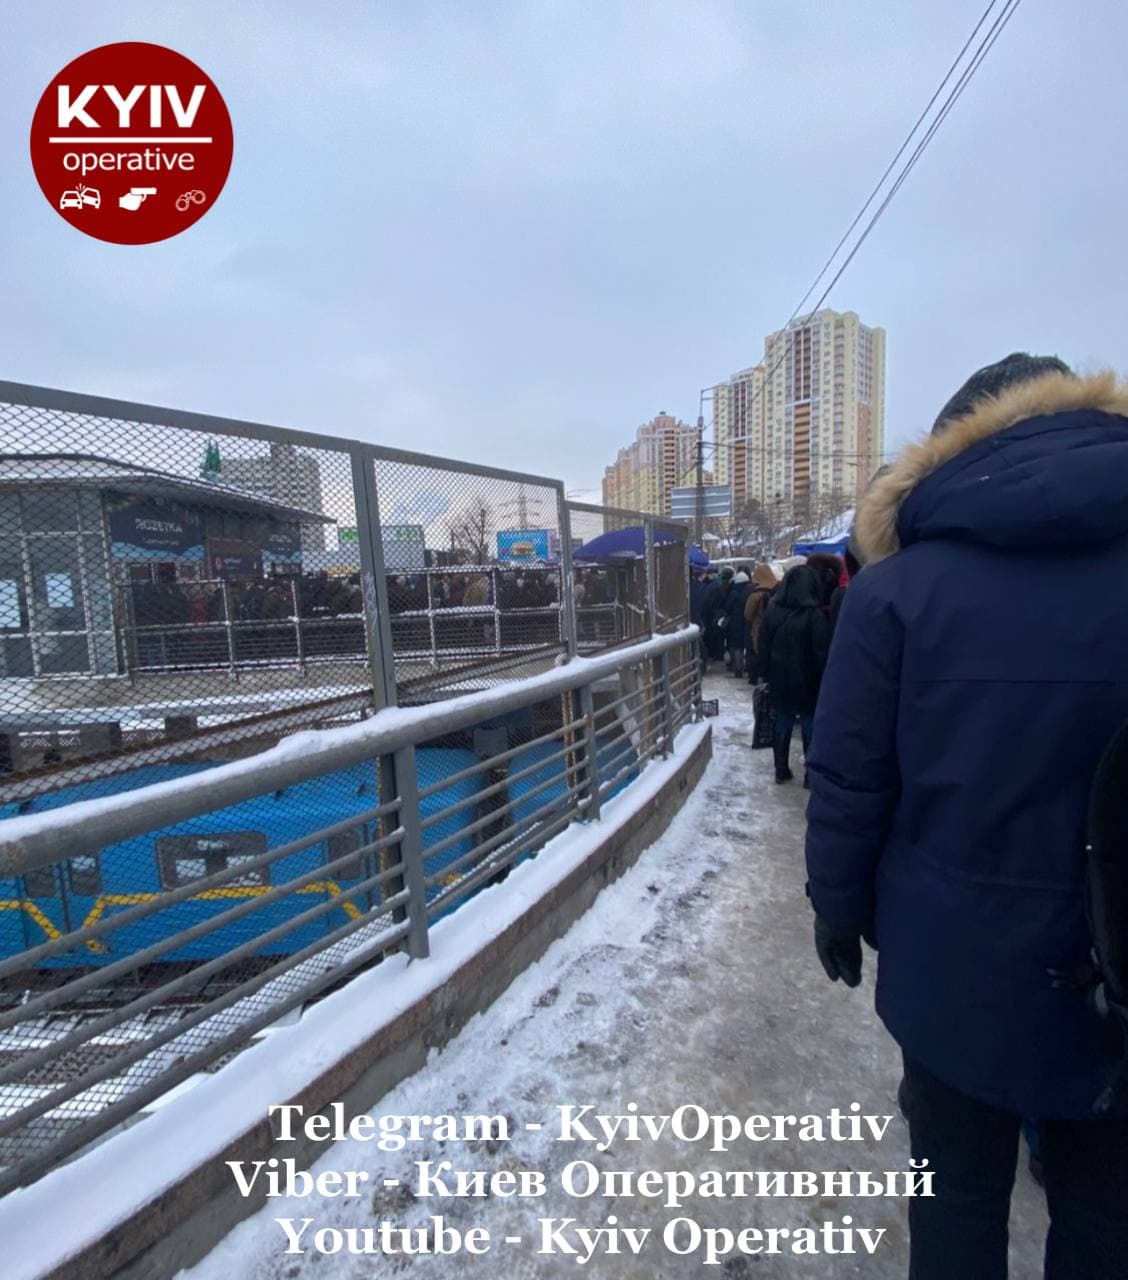 огромная очередь возле станции метро "Черниговская"